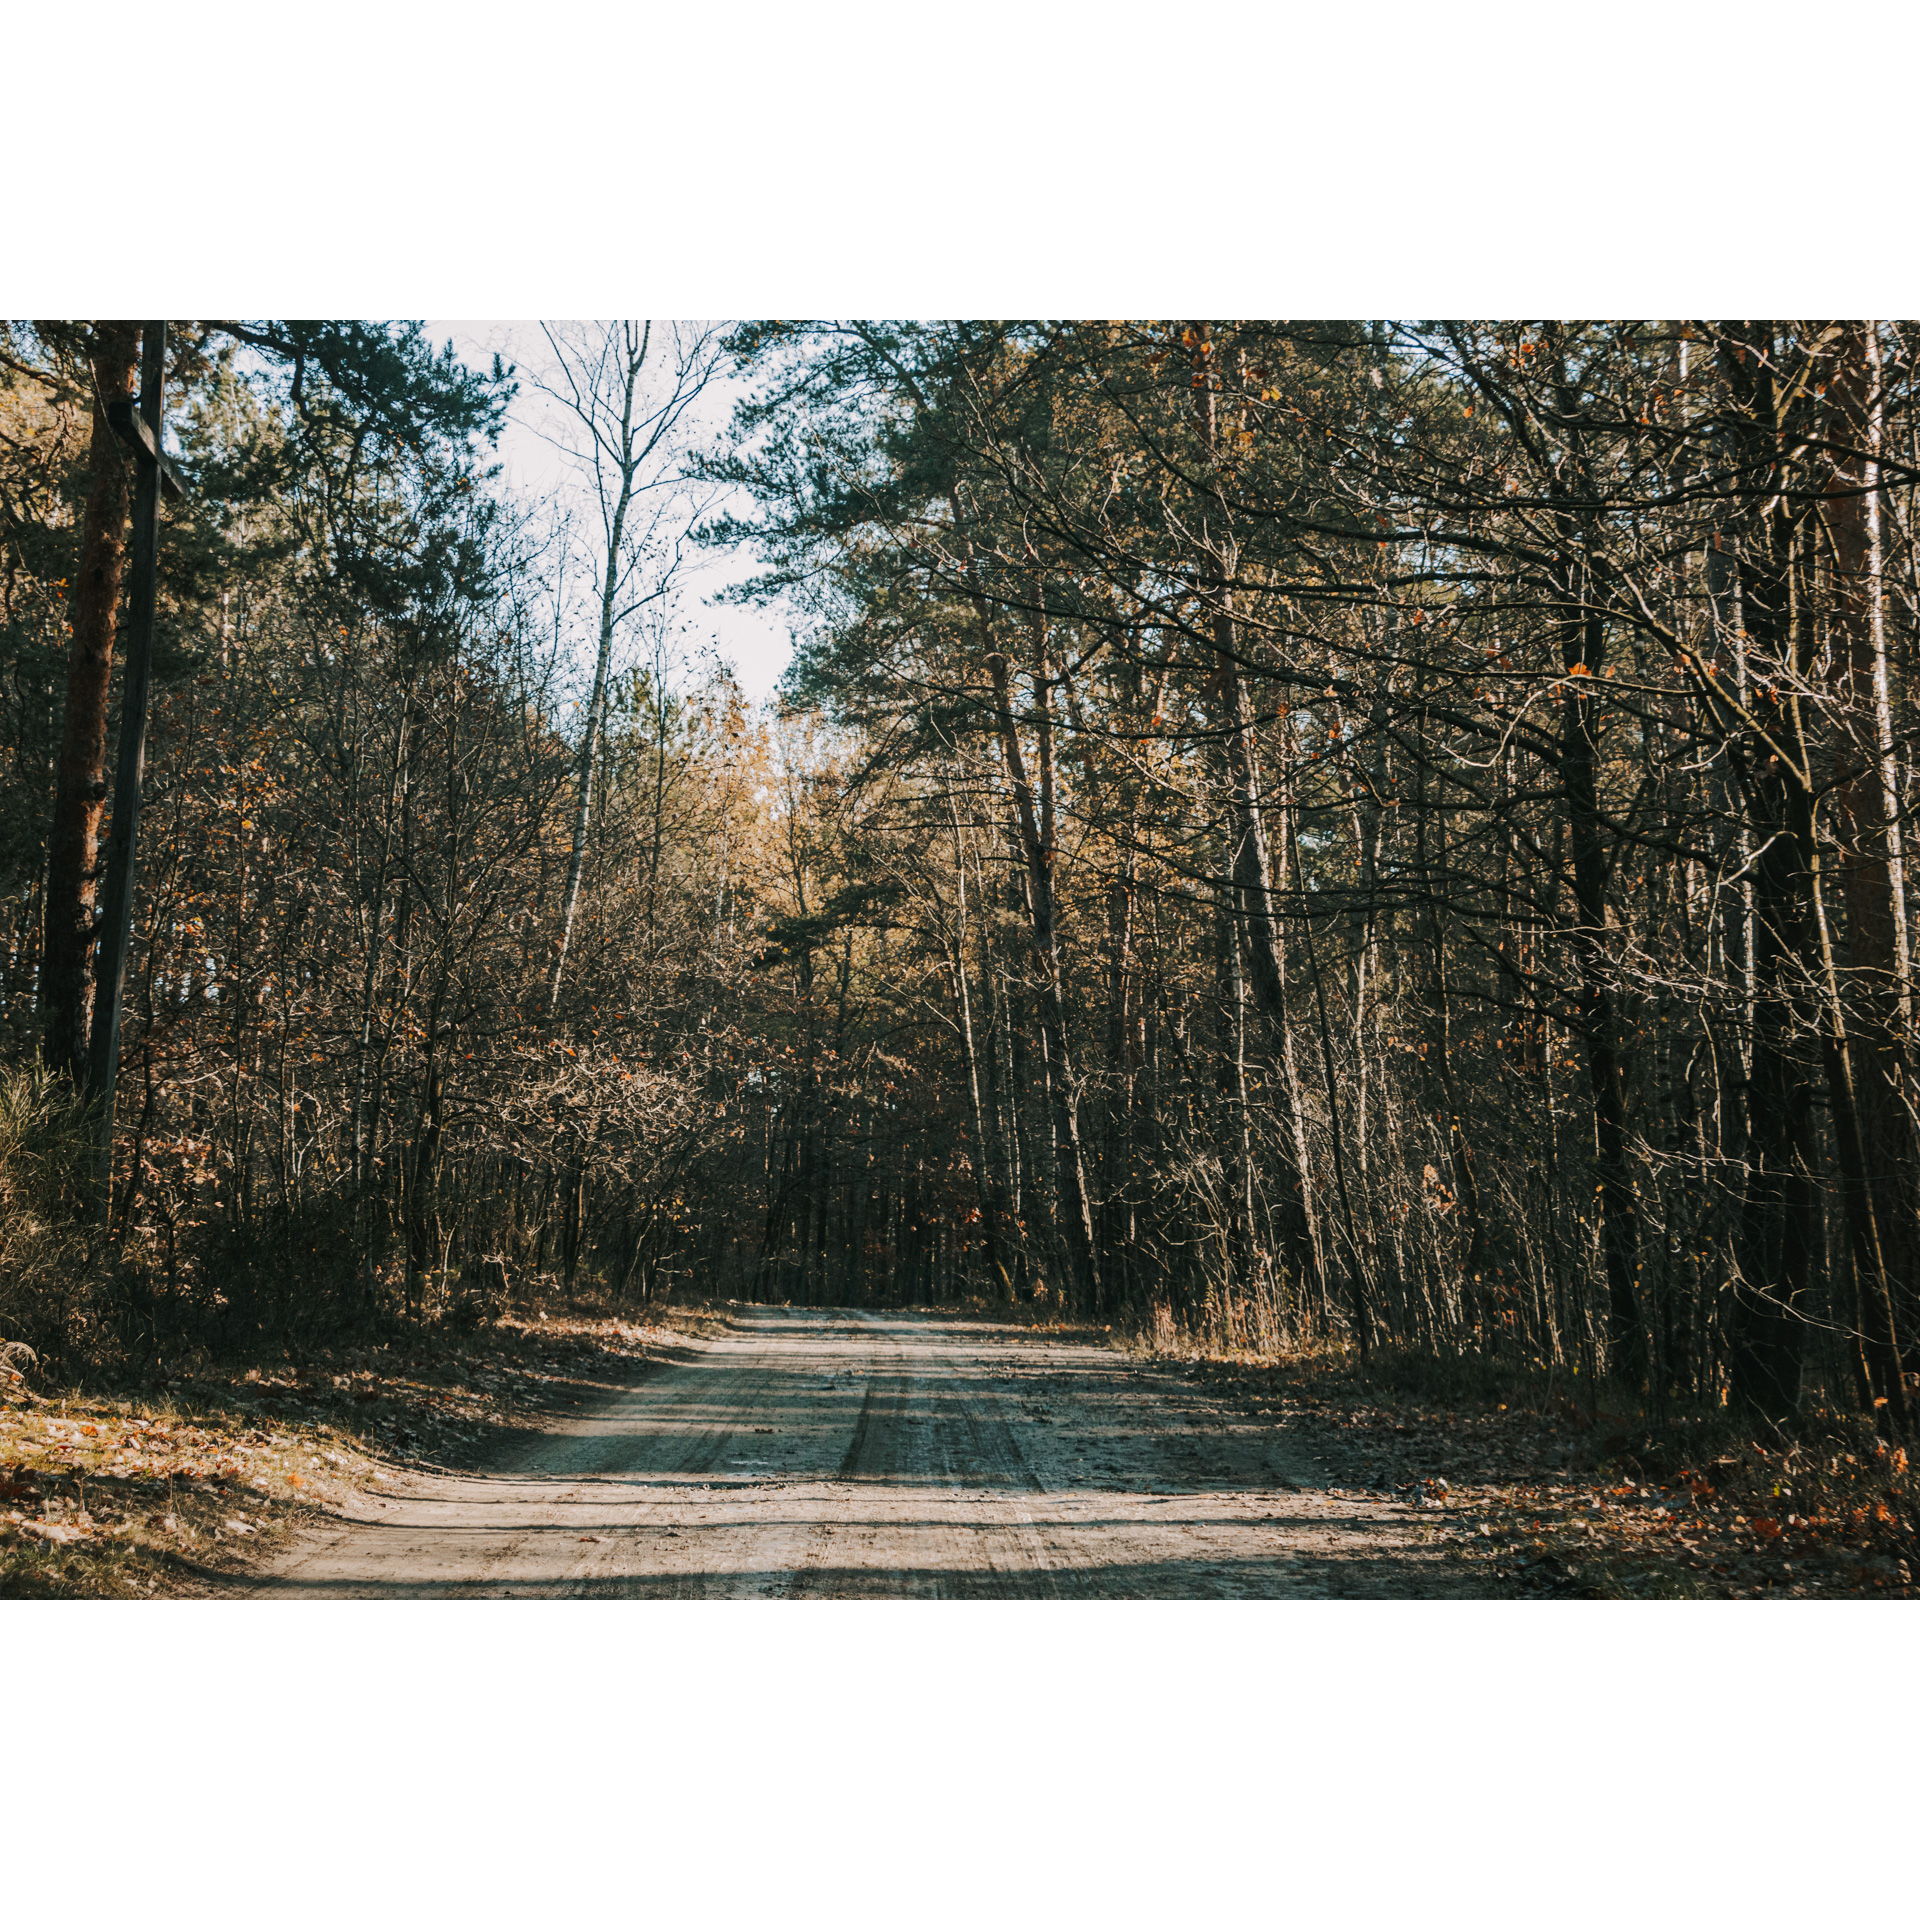 Piaszczysta droga prowadząca przez las mieszany